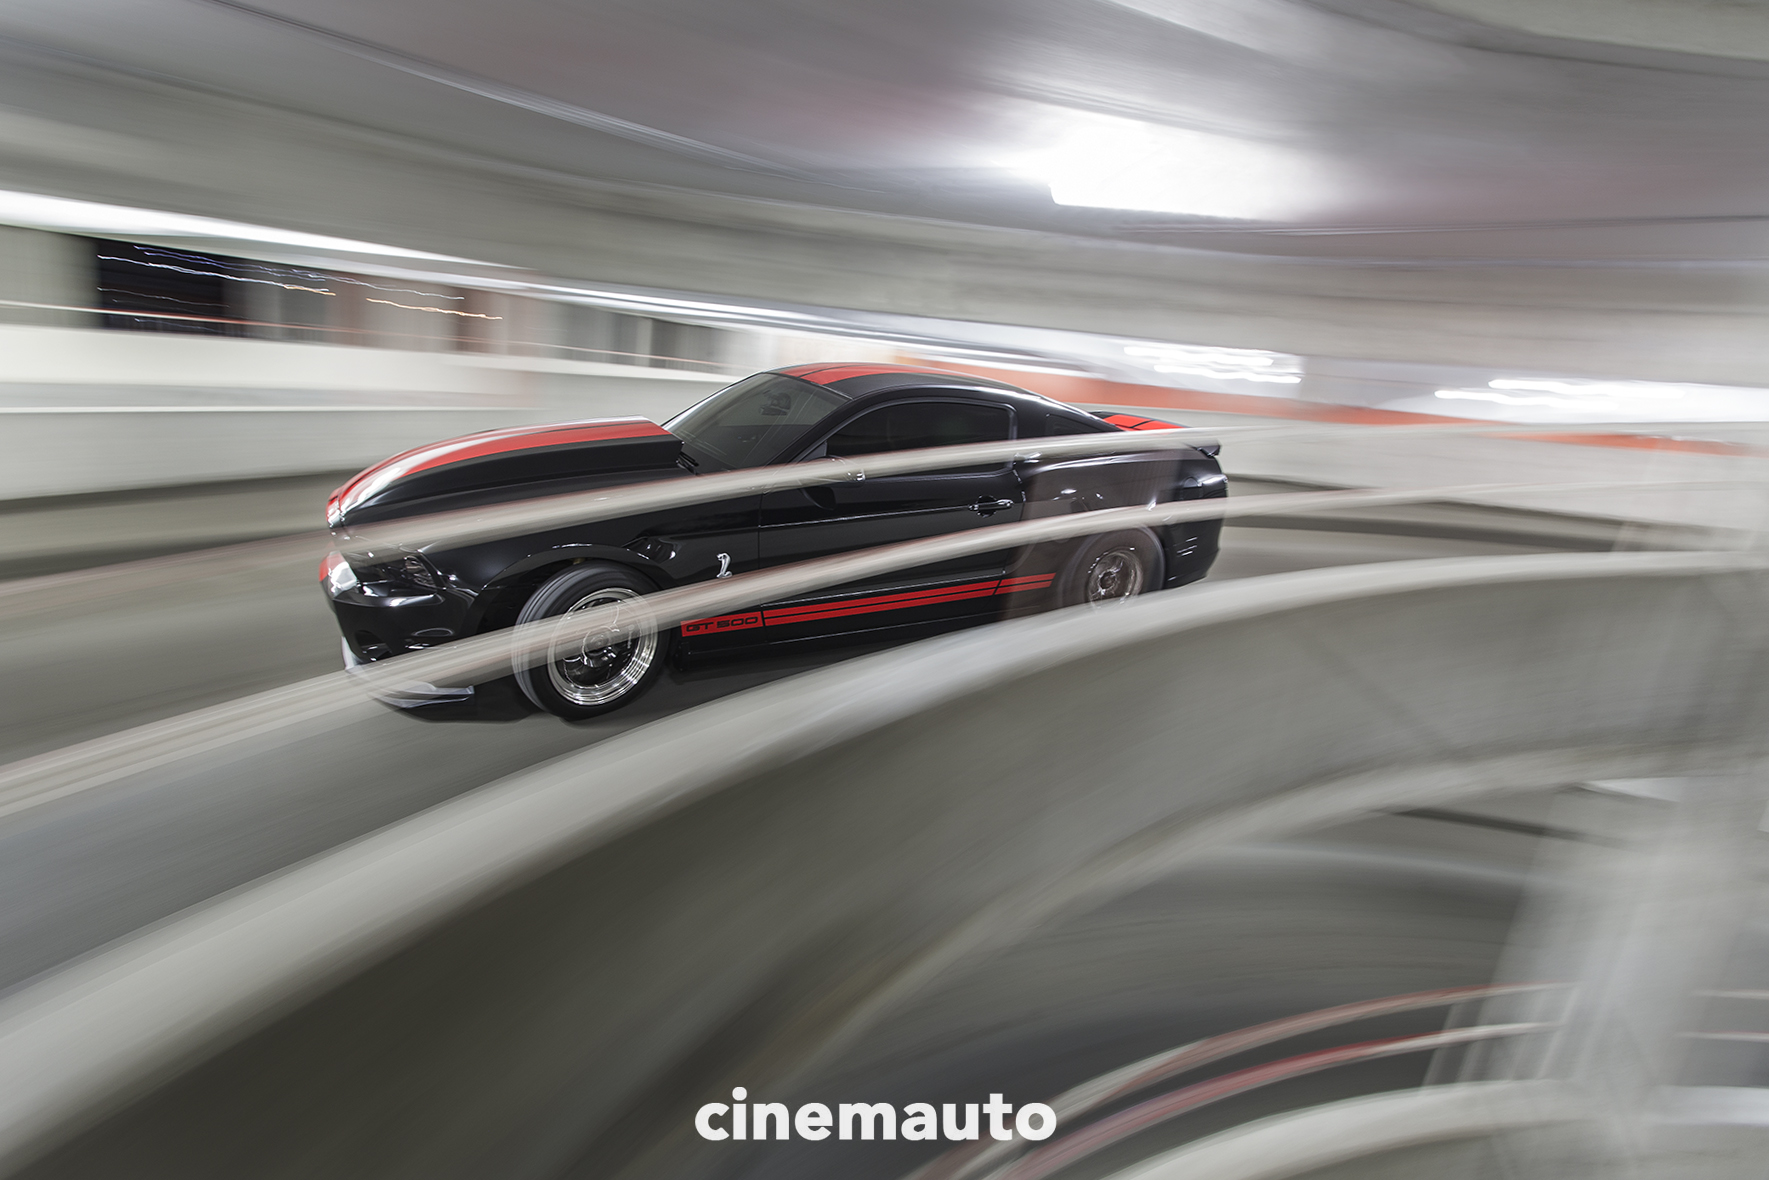 cinemauto-wichita-automotive-photography-cj-x.jpg